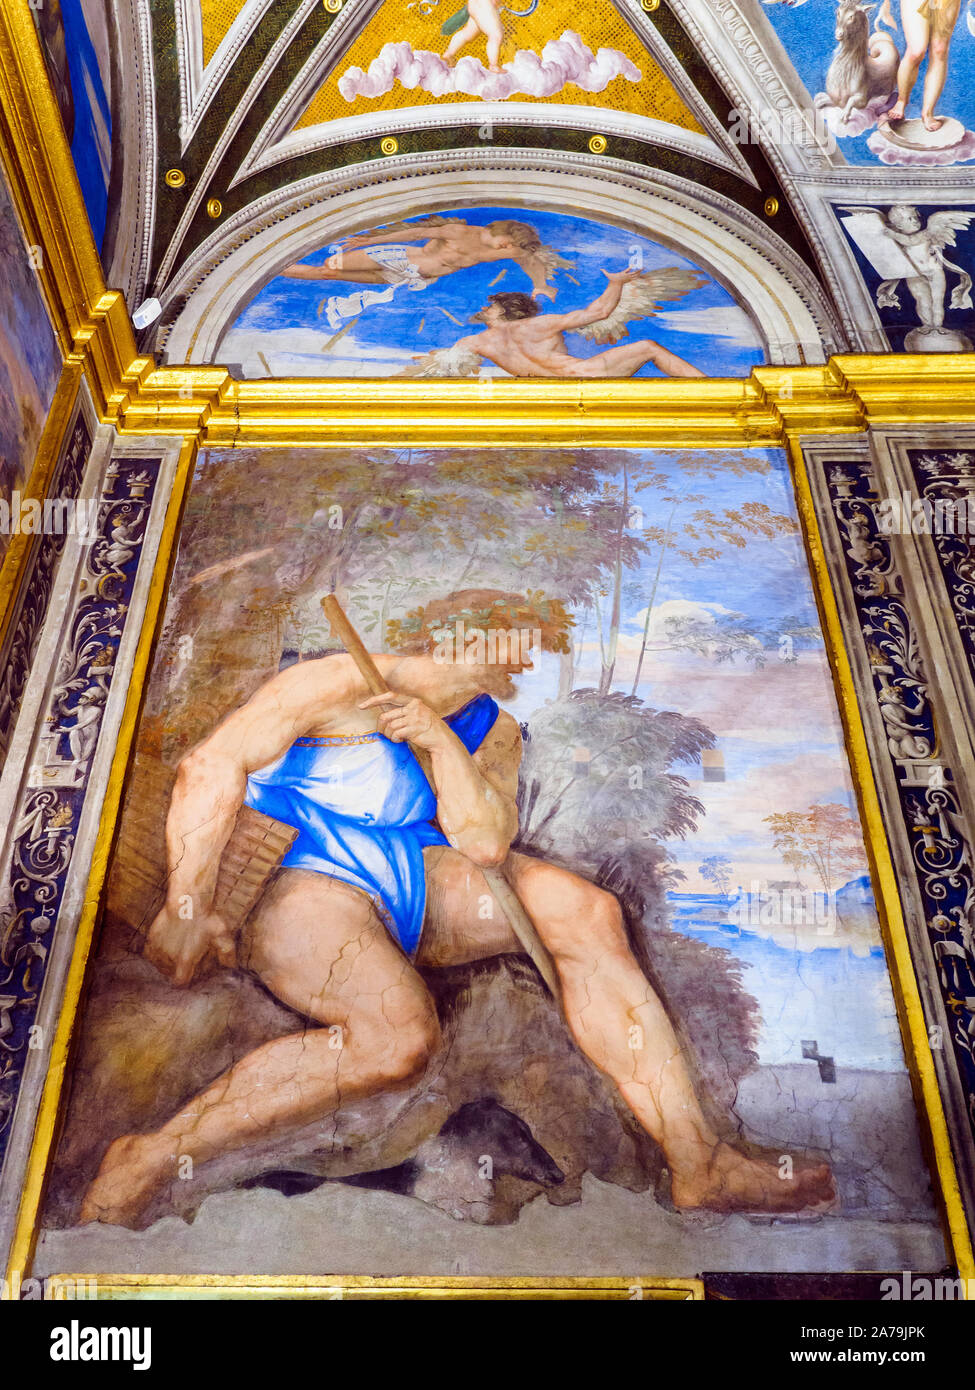 The fresco 'Polifemo e le Lunette' (Polyphemus and the Lunettes) by Sebastiano del Piombo in the Loggia of Galatea of Villa Farnesina - Rome, Italy Stock Photo